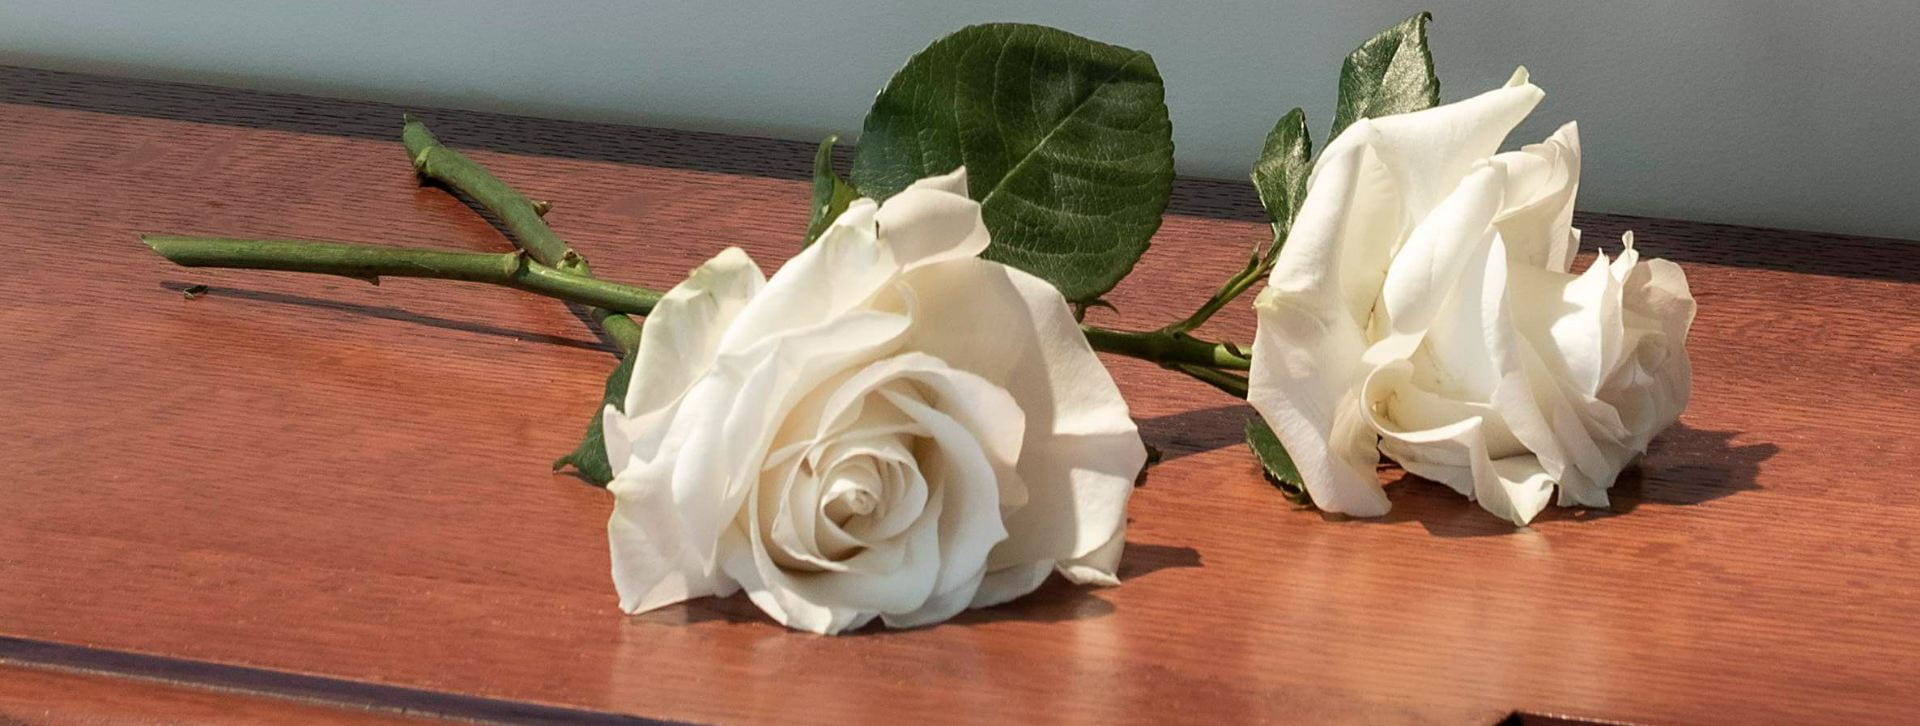 White roses for Aquinas Fire memorial plaque